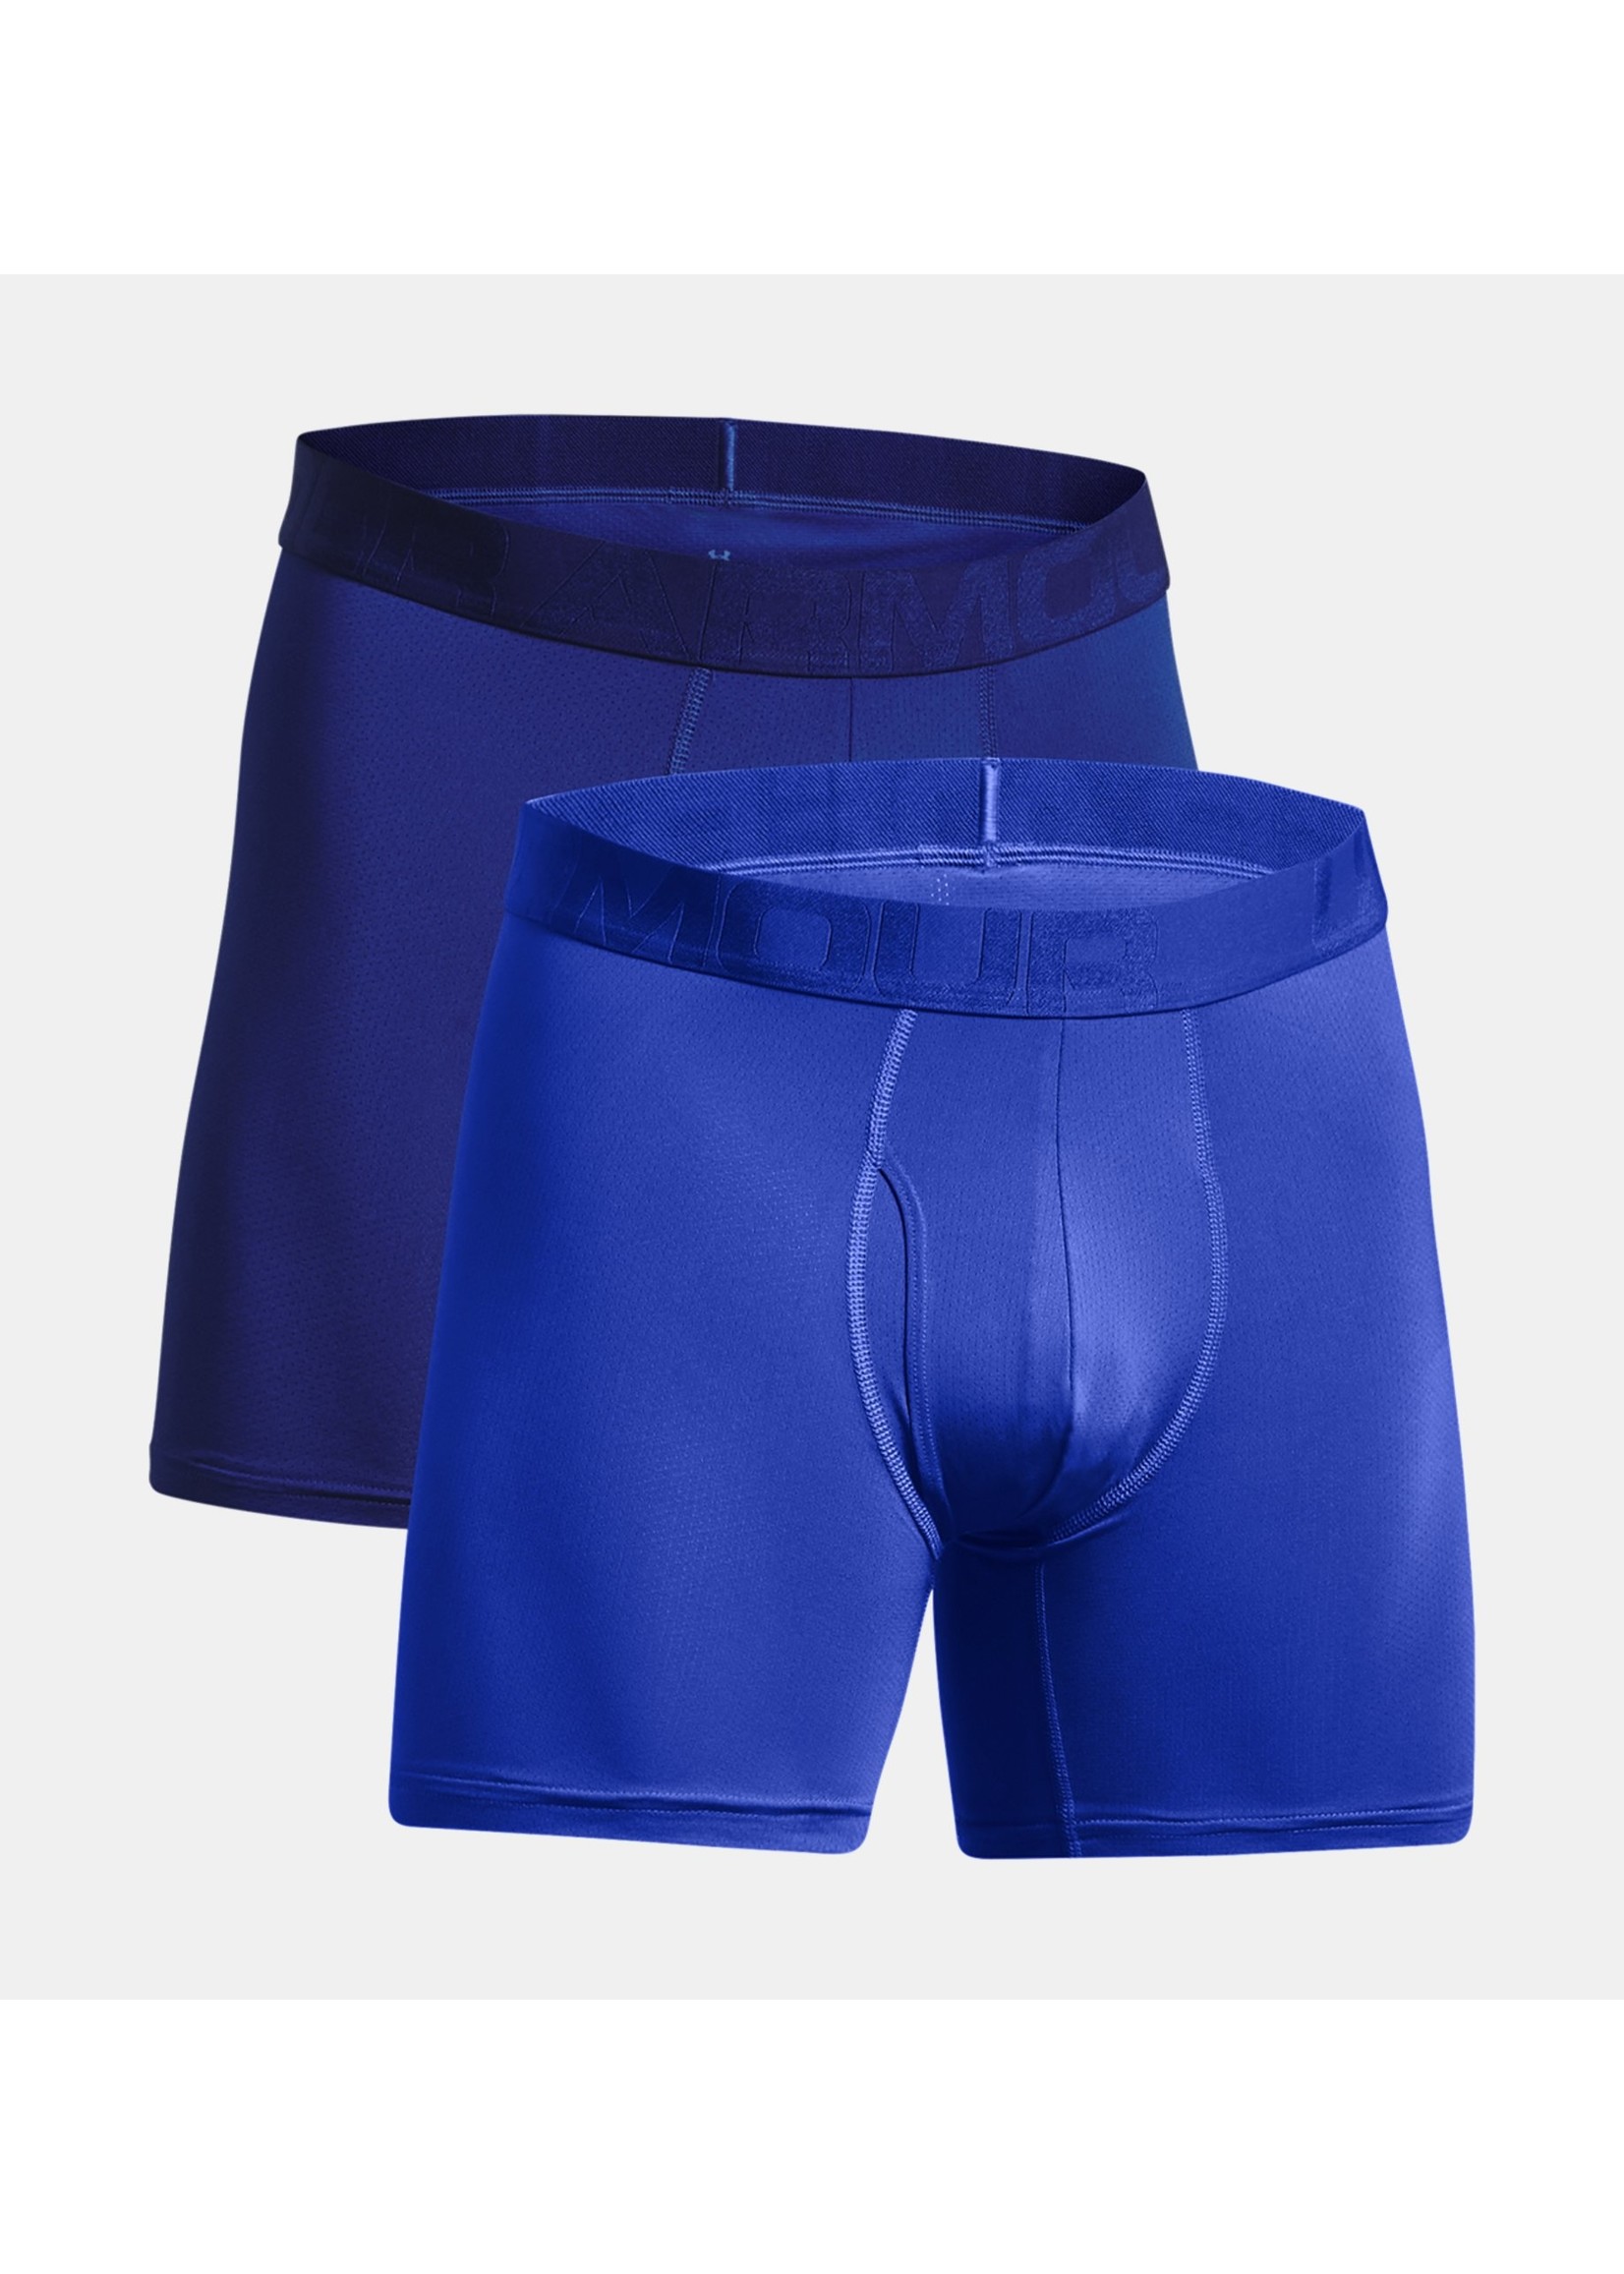 Under Armour Tech Mesh 6in Underwear - 2-Pack - Men's Royal/Academy, XXL